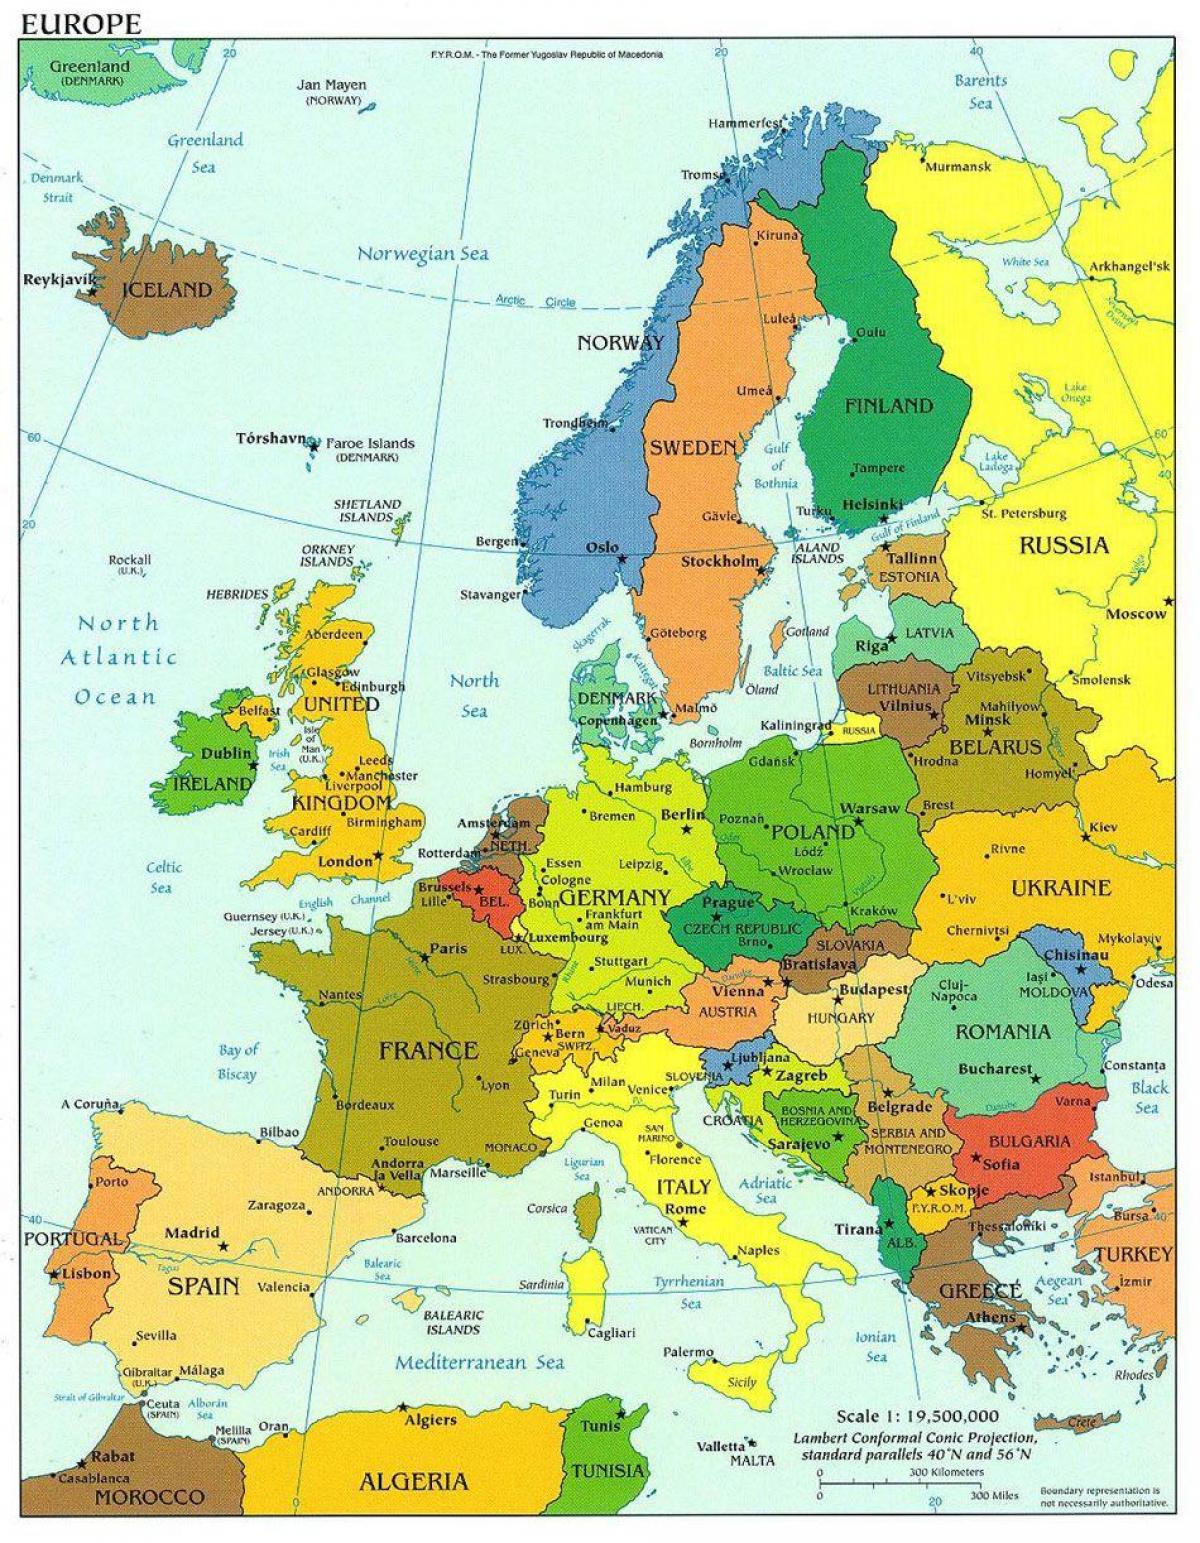 zemljevid evrope kažejo, danska